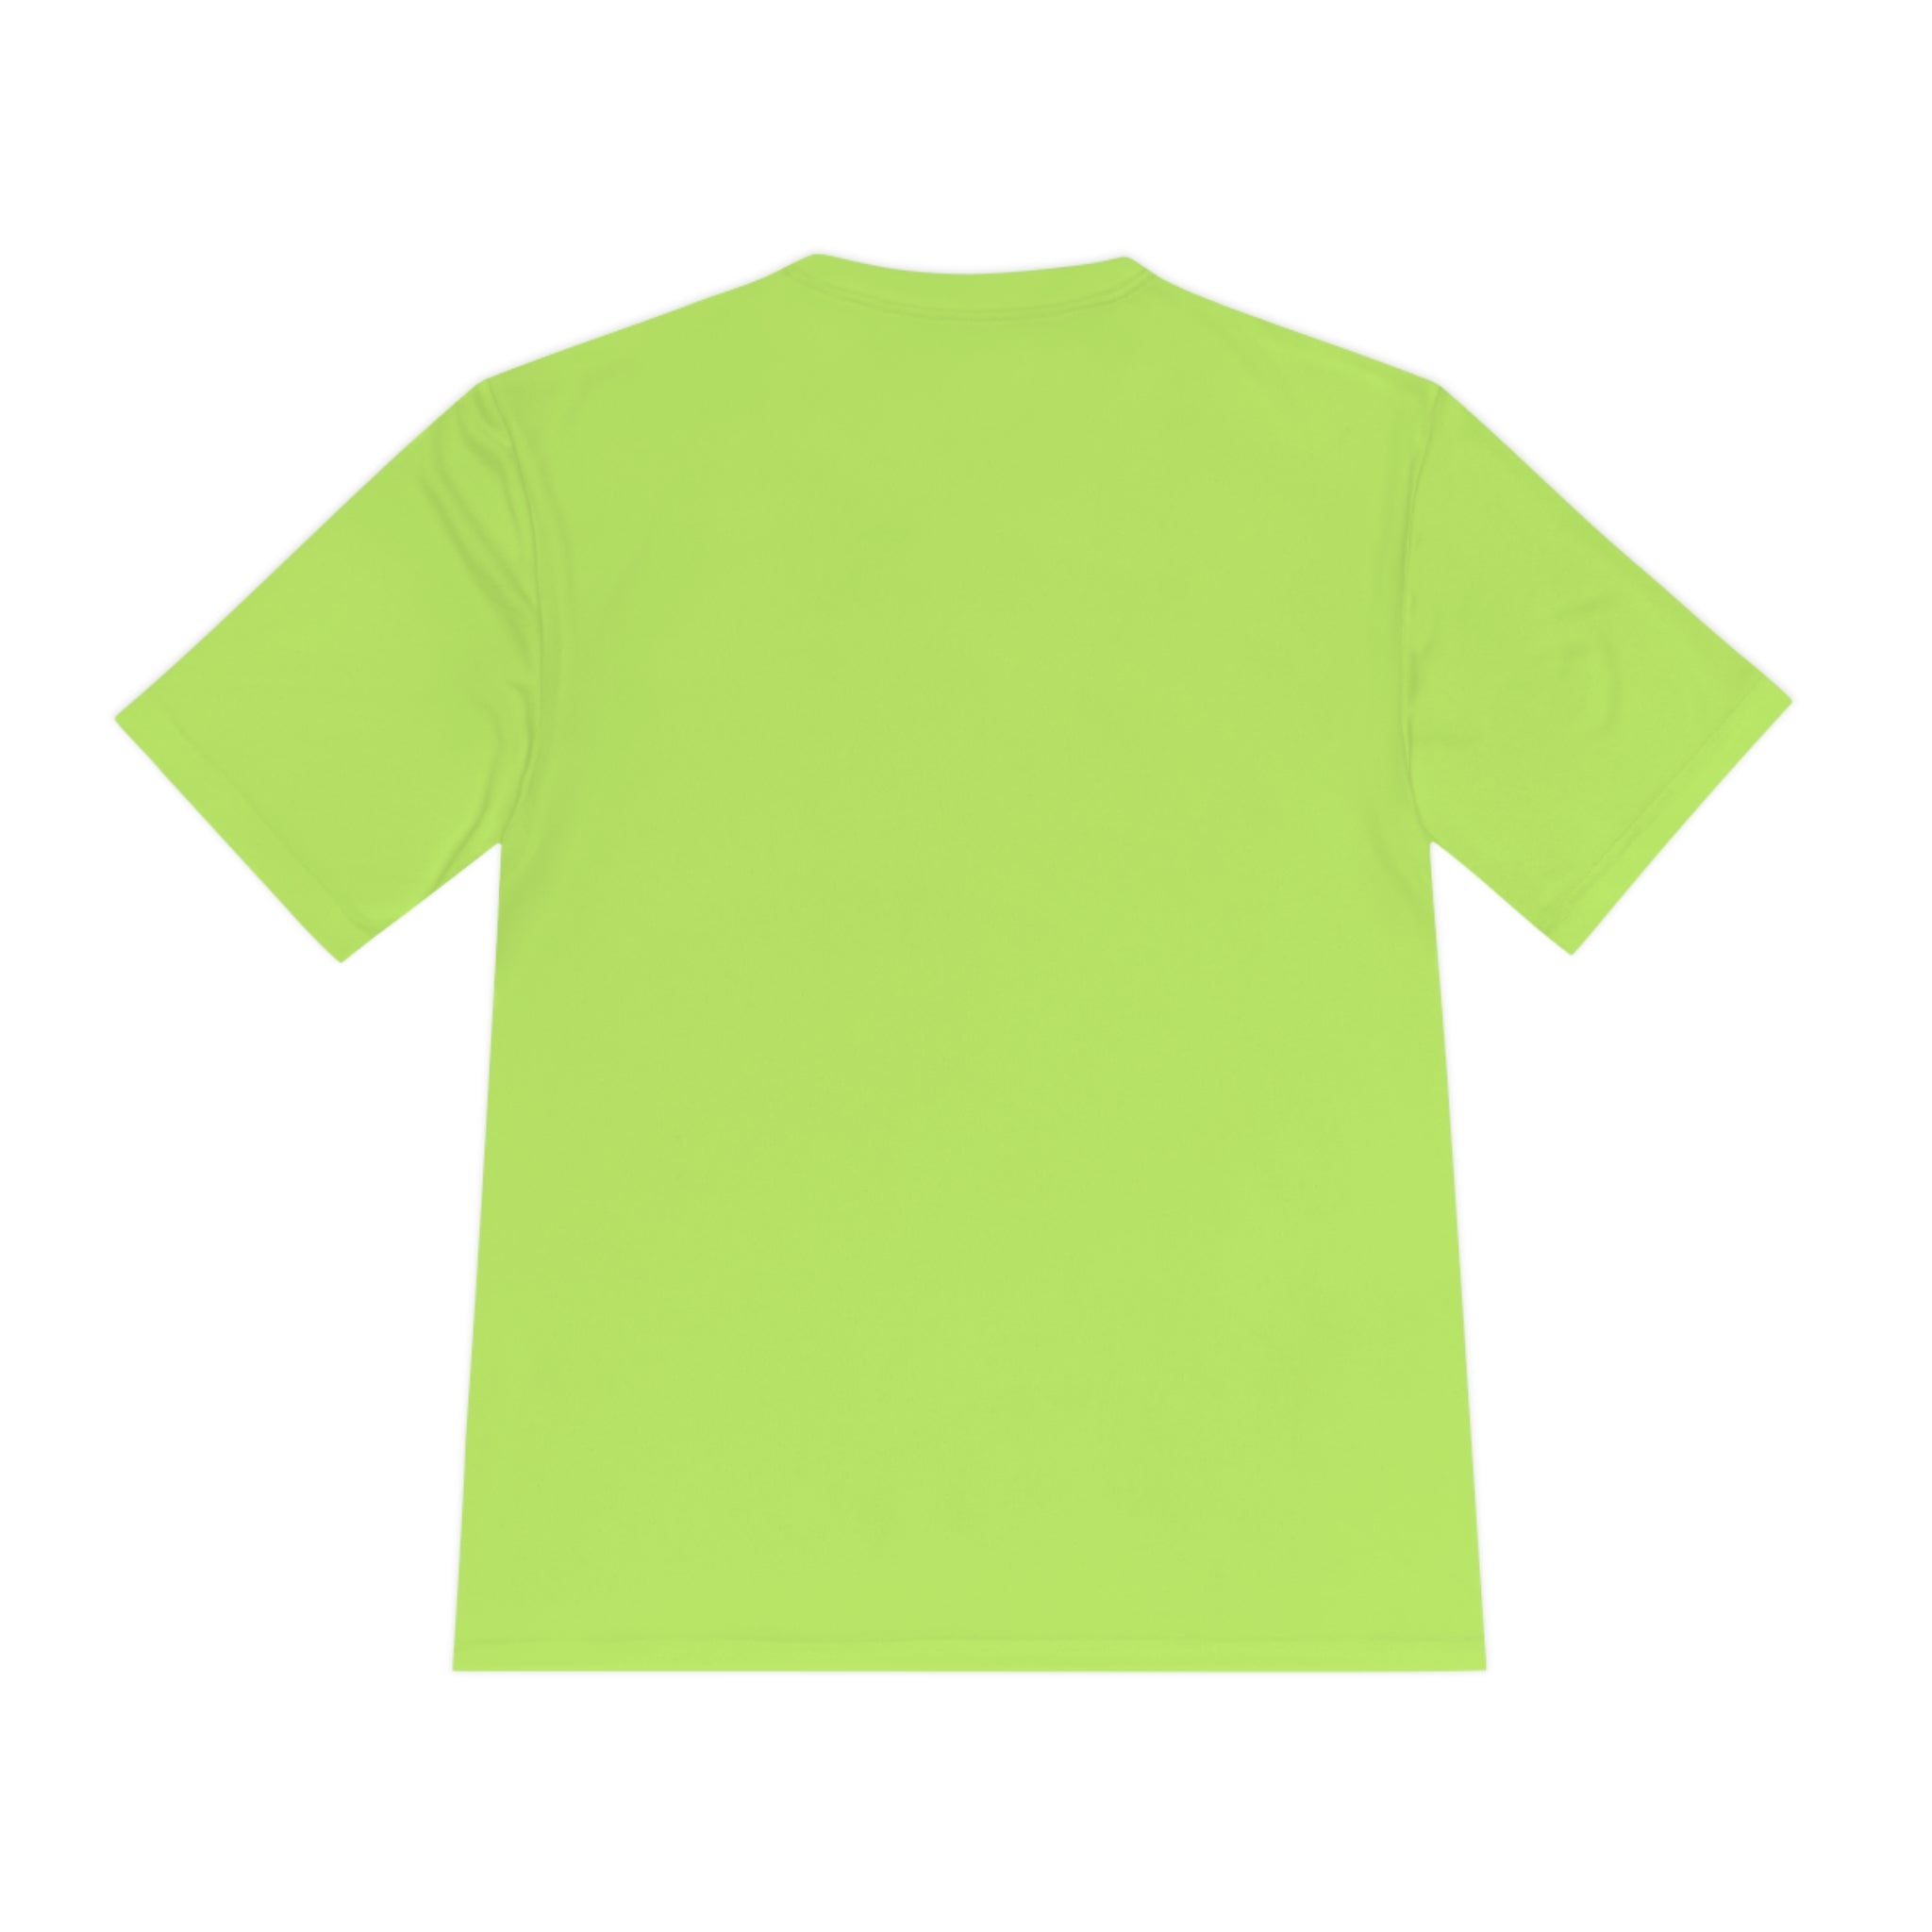 Athlete Tee - Neon Green